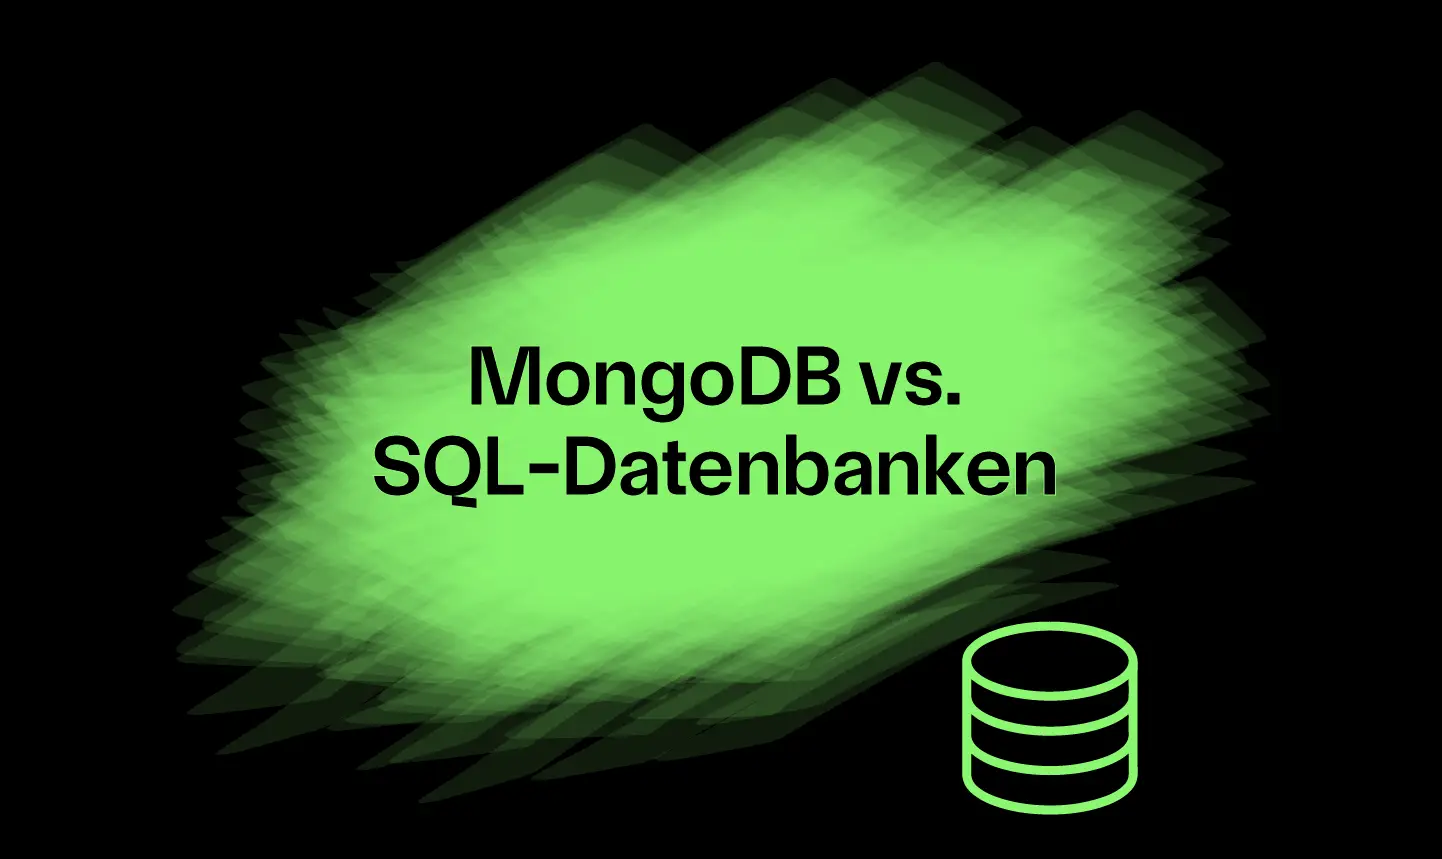 MongoDB als NoSQL-Datenbank im Vergleich zu herkömmlichen SQL-Datenbanken